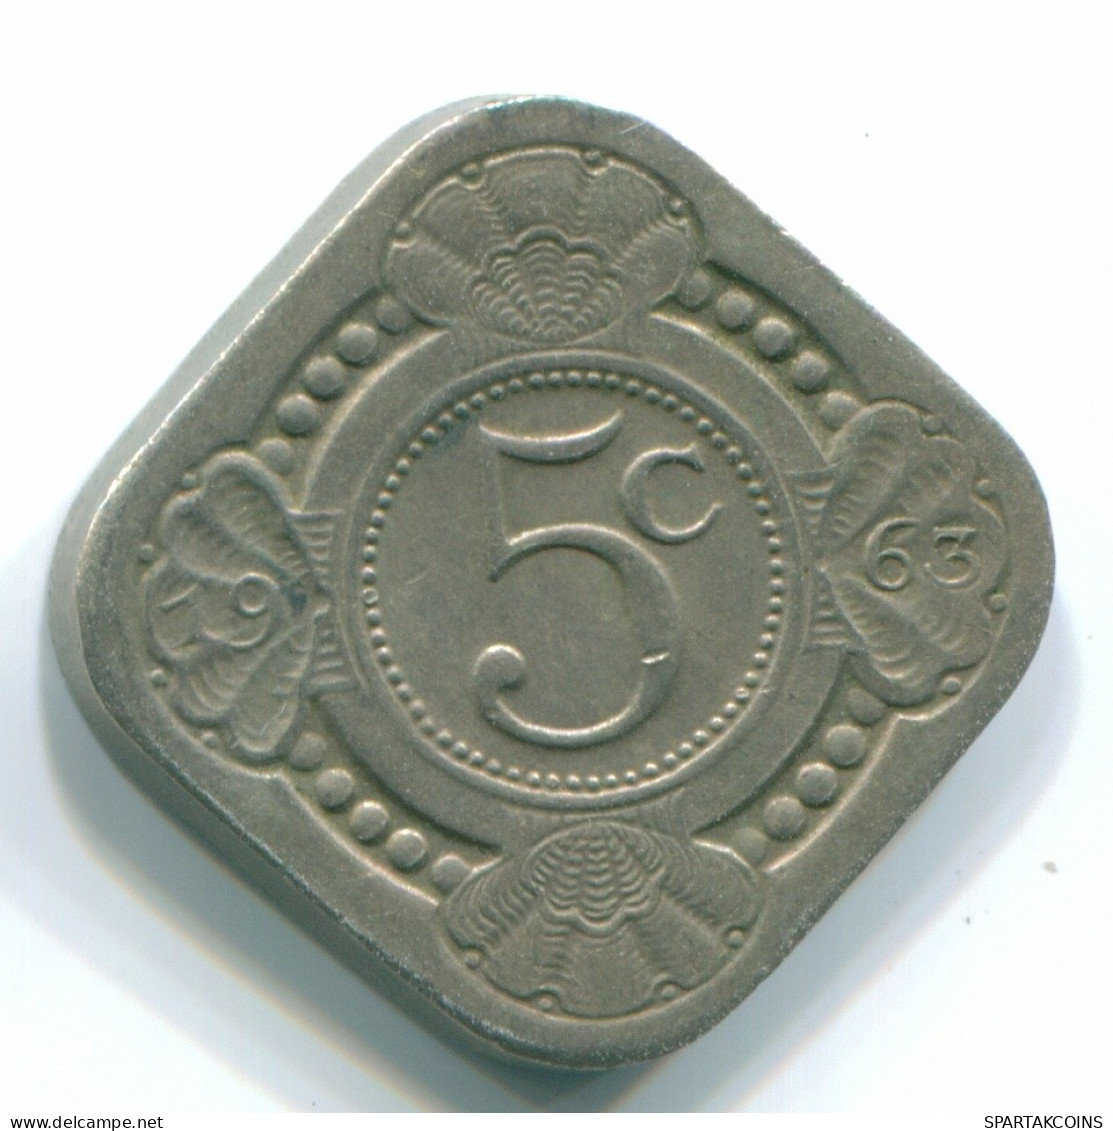 5 CENTS 1963 NETHERLANDS ANTILLES Nickel Colonial Coin #S12425.U.A - Niederländische Antillen